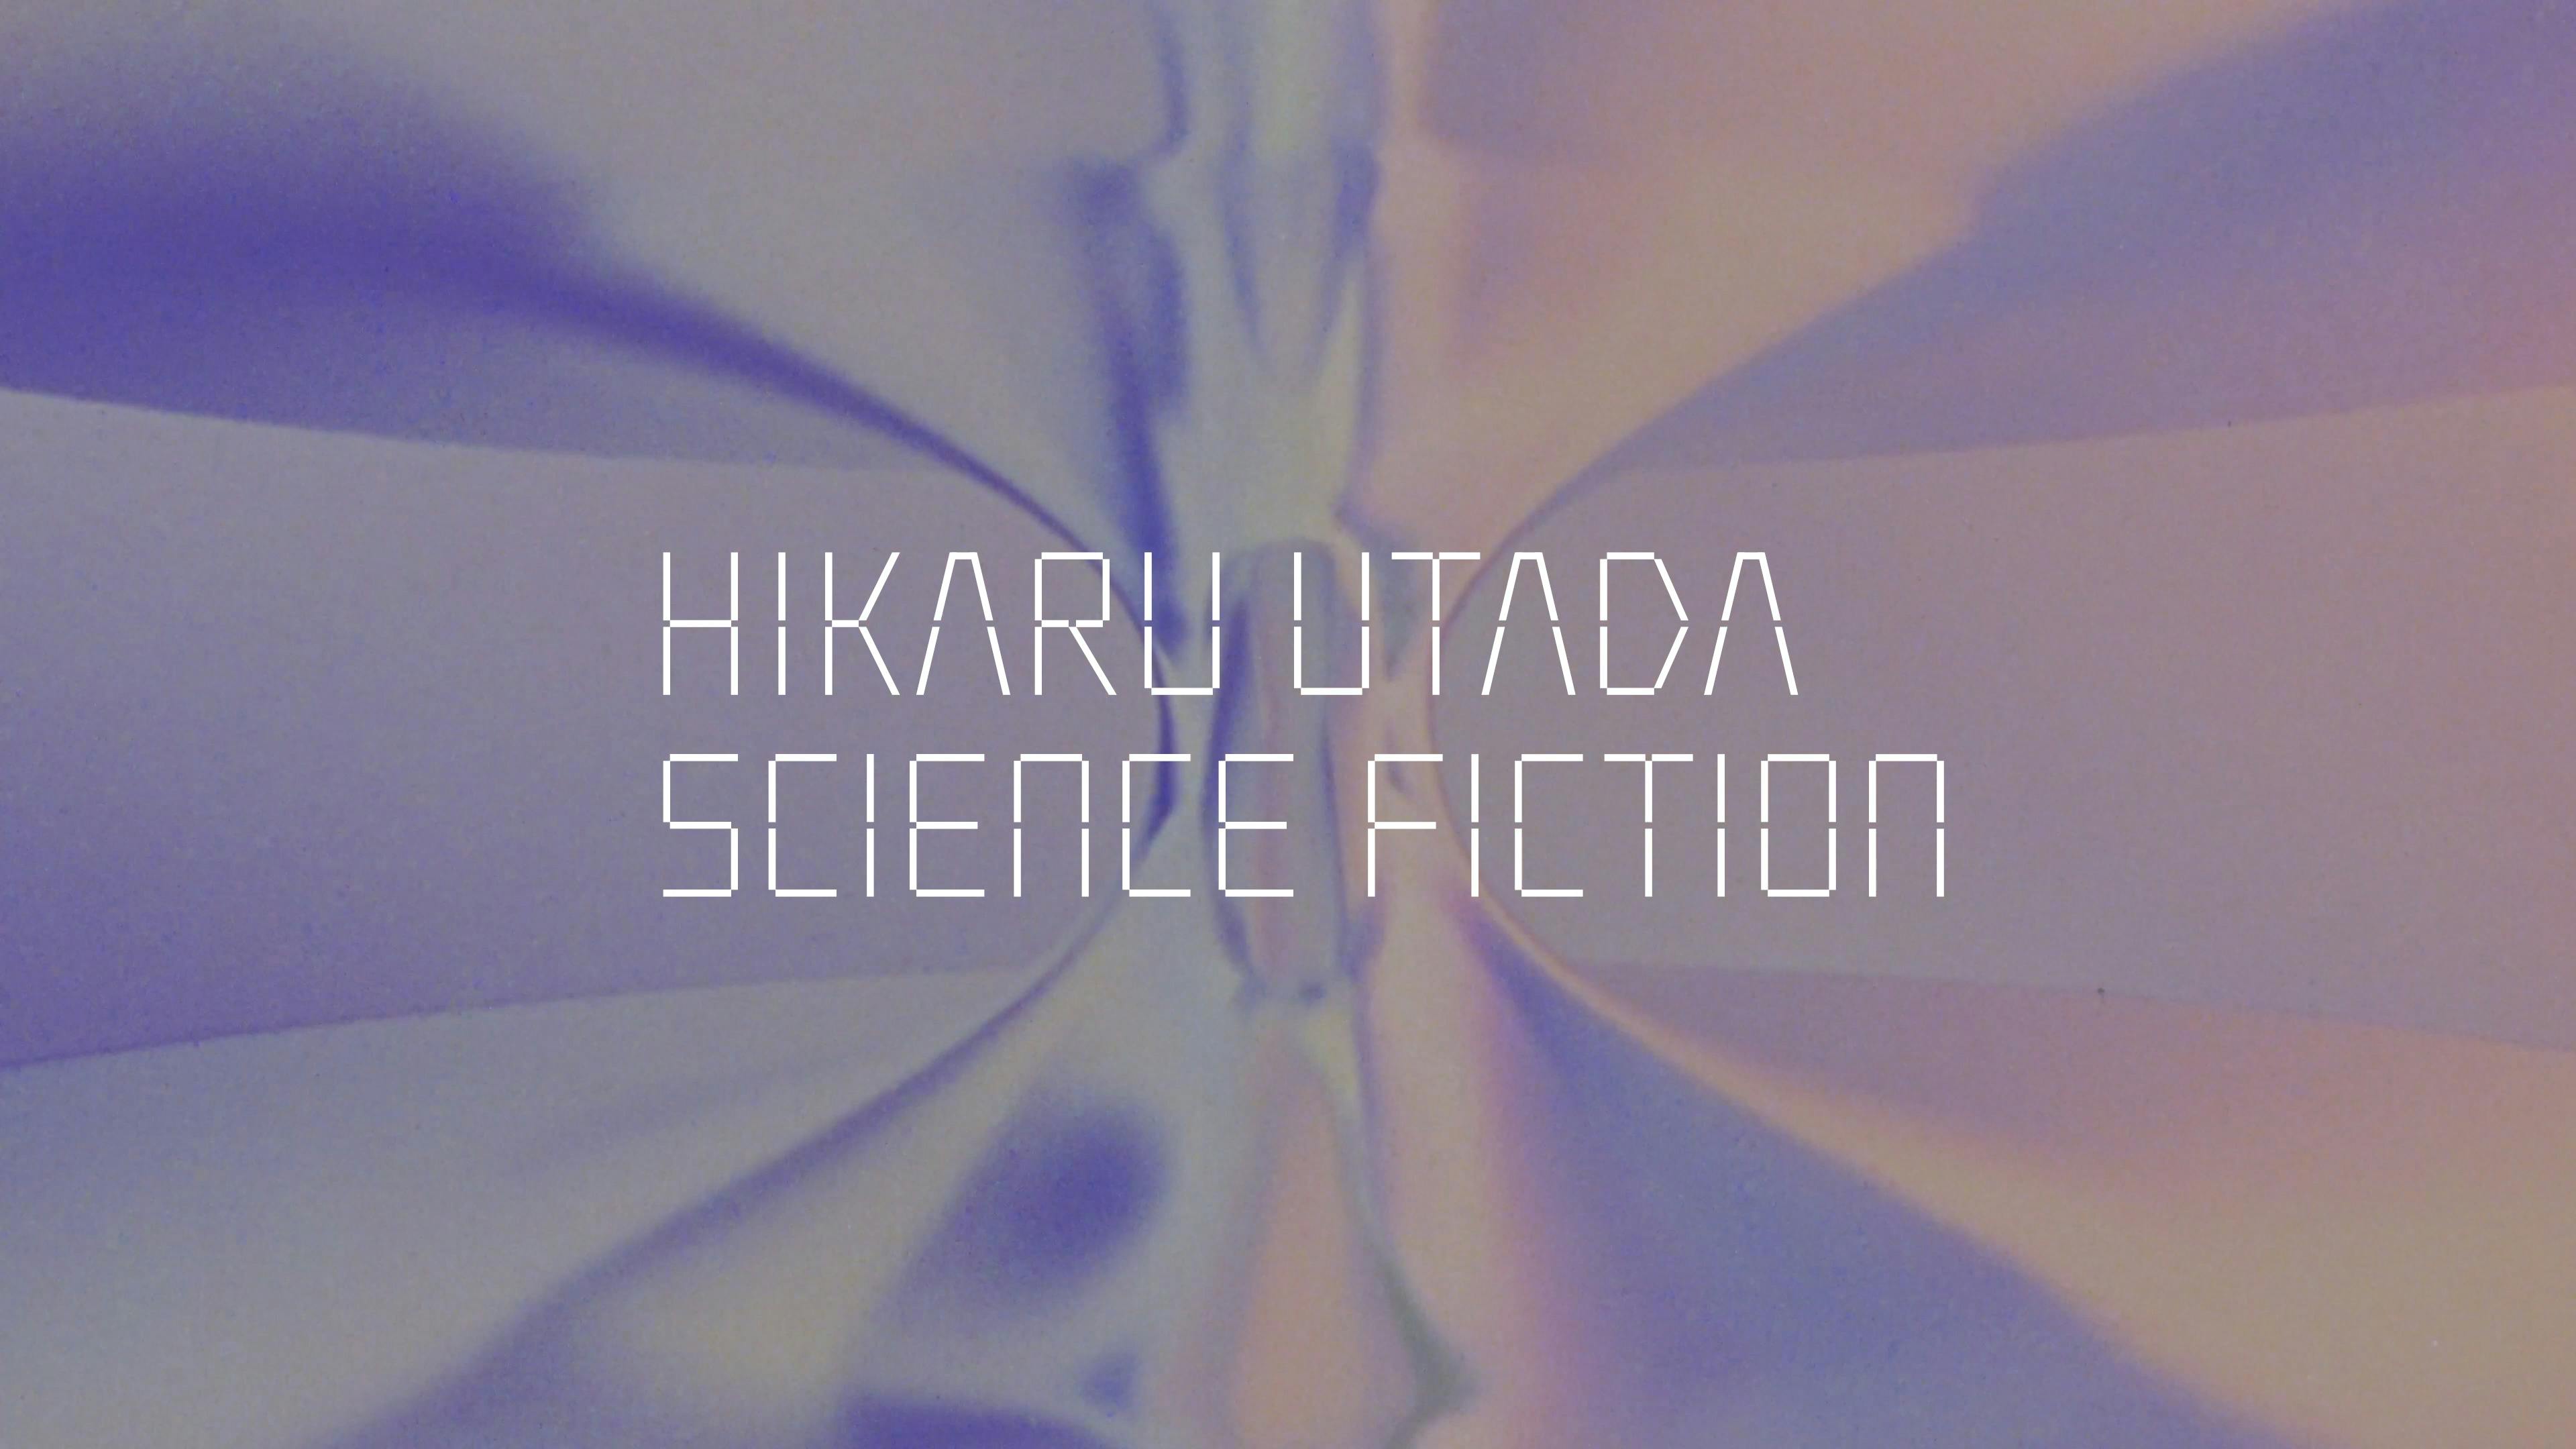 自身初のベストアルバム「SCIENCE FICTION」本日発売 作品について宇多田ヒカルが語る、スペシャルインタビュー映像が公開のサムネイル